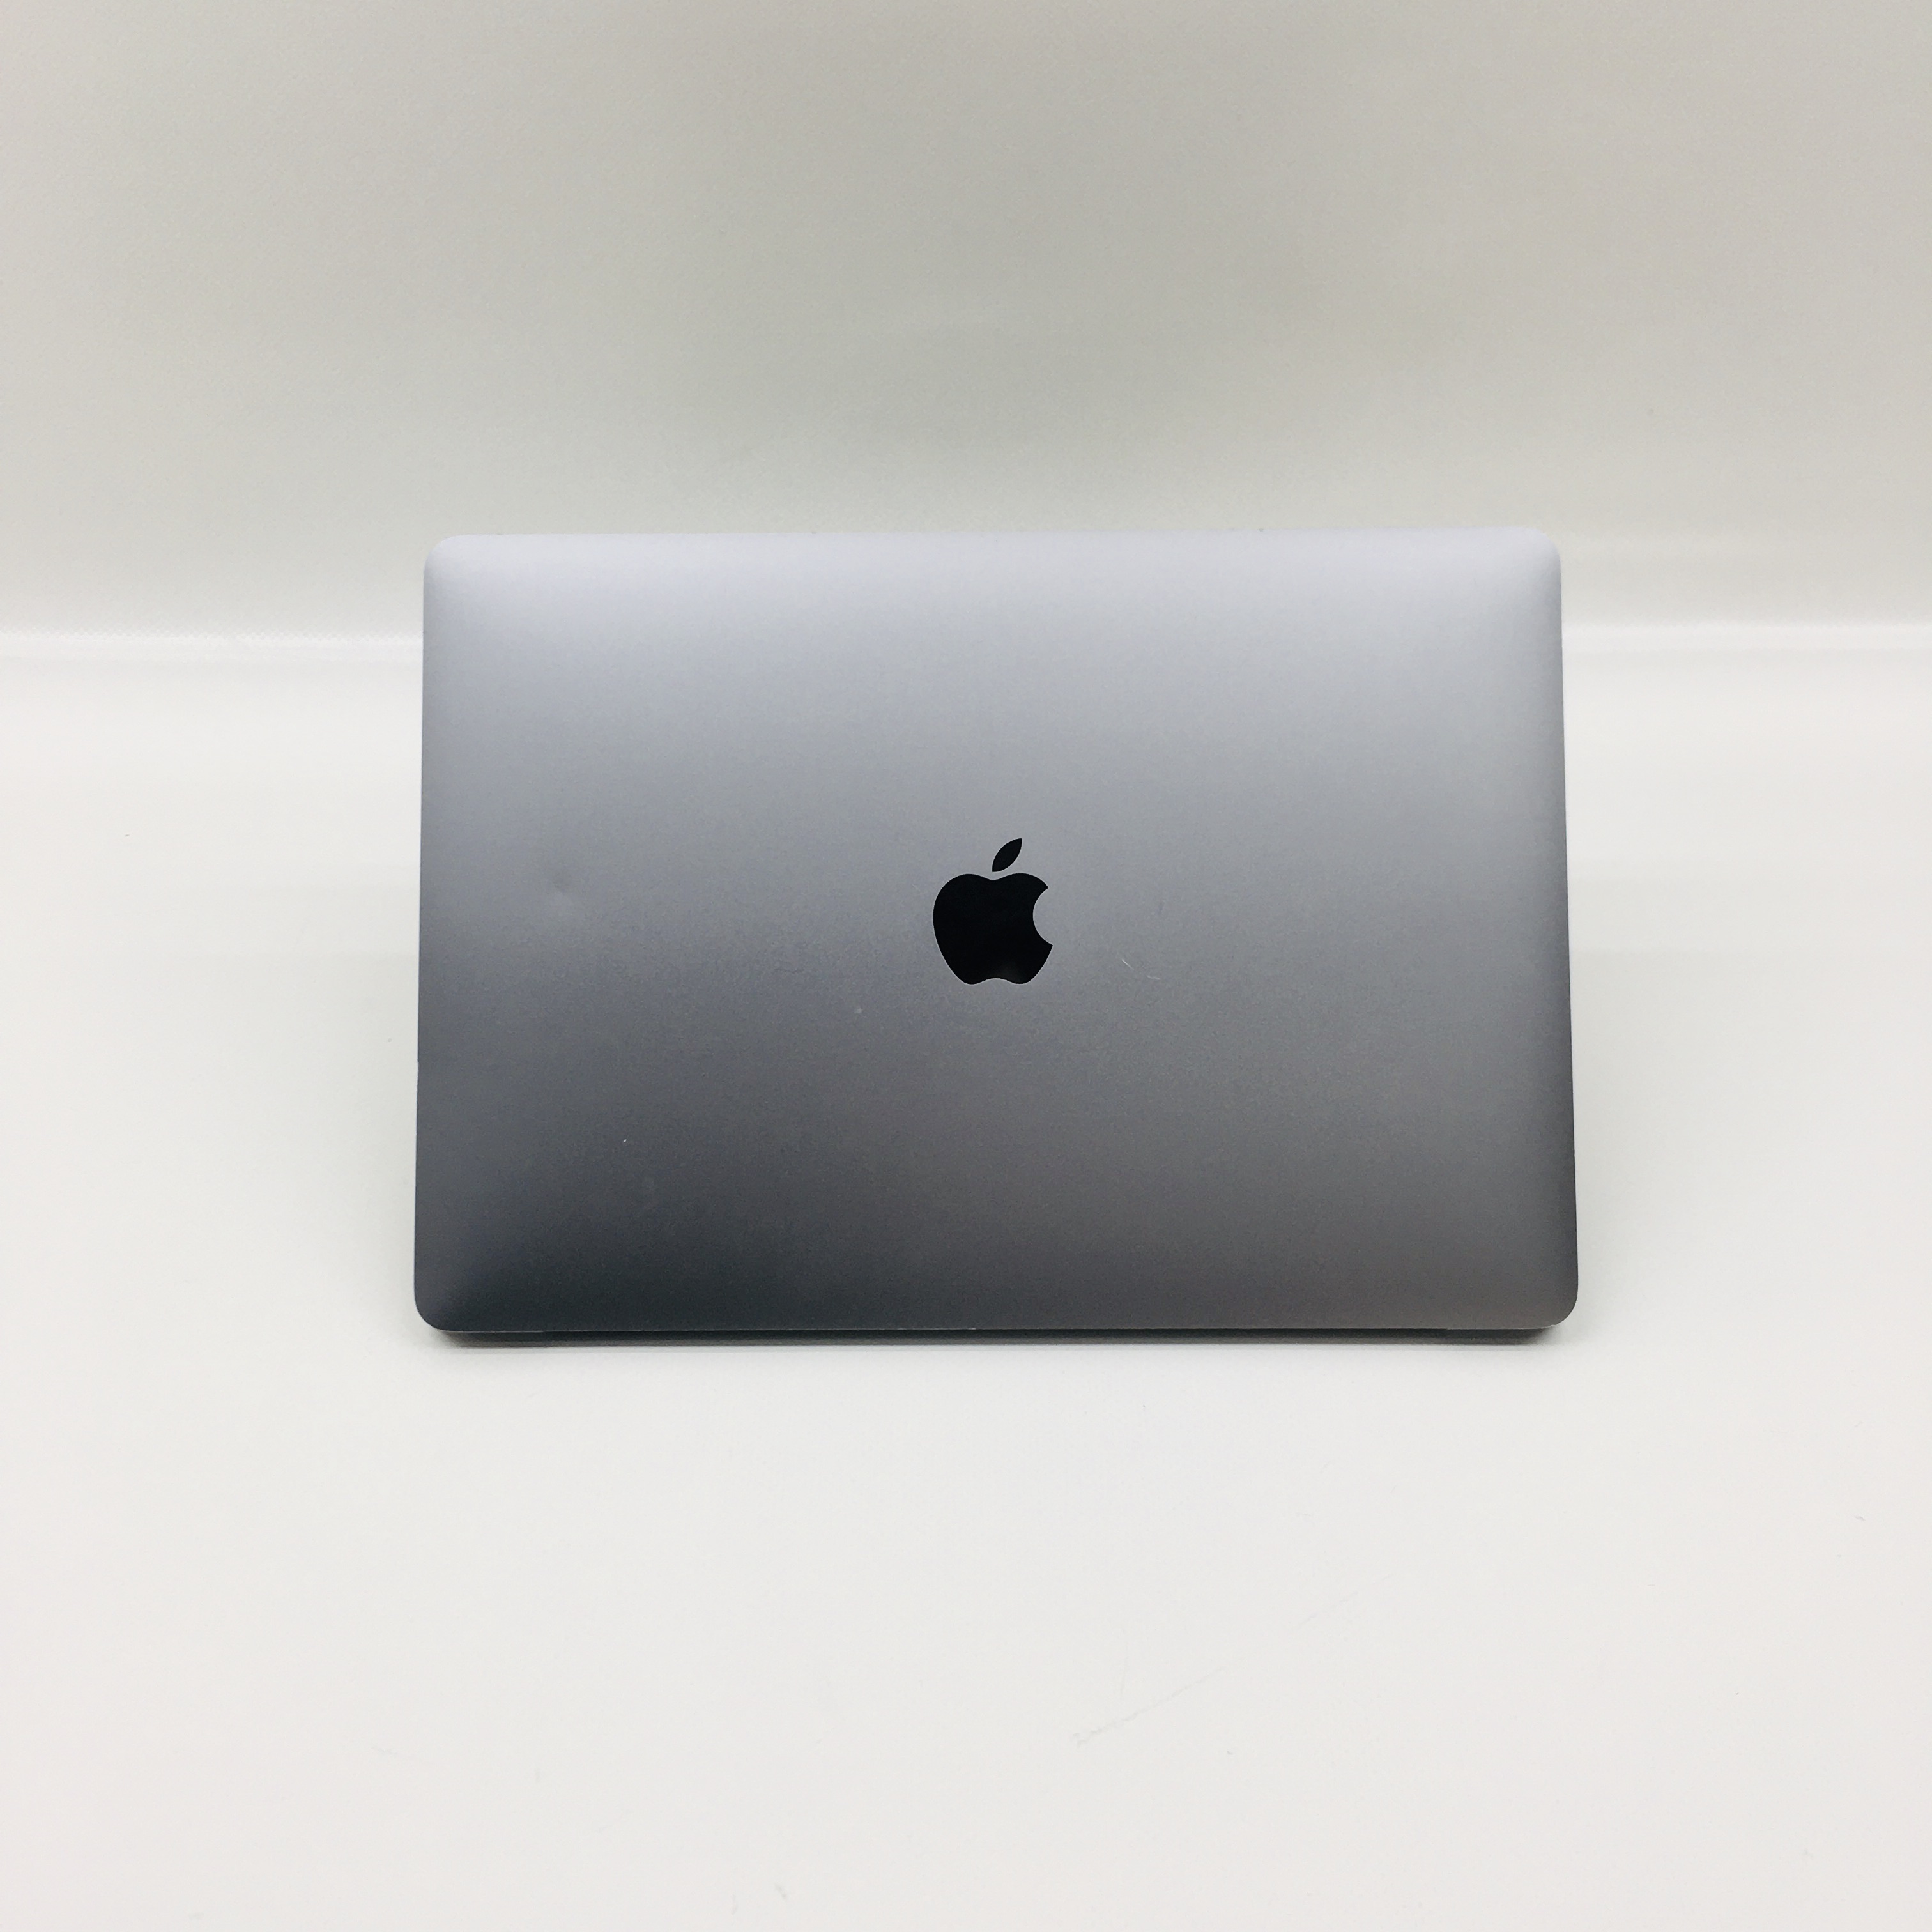 MacBook Pro 13" 4TBT Mid 2019 (Intel Quad-Core i5 2.4 GHz 8 GB RAM 256 GB SSD), Space Gray, Intel Quad-Core i5 2.4 GHz, 8 GB RAM, 256 GB SSD, image 4